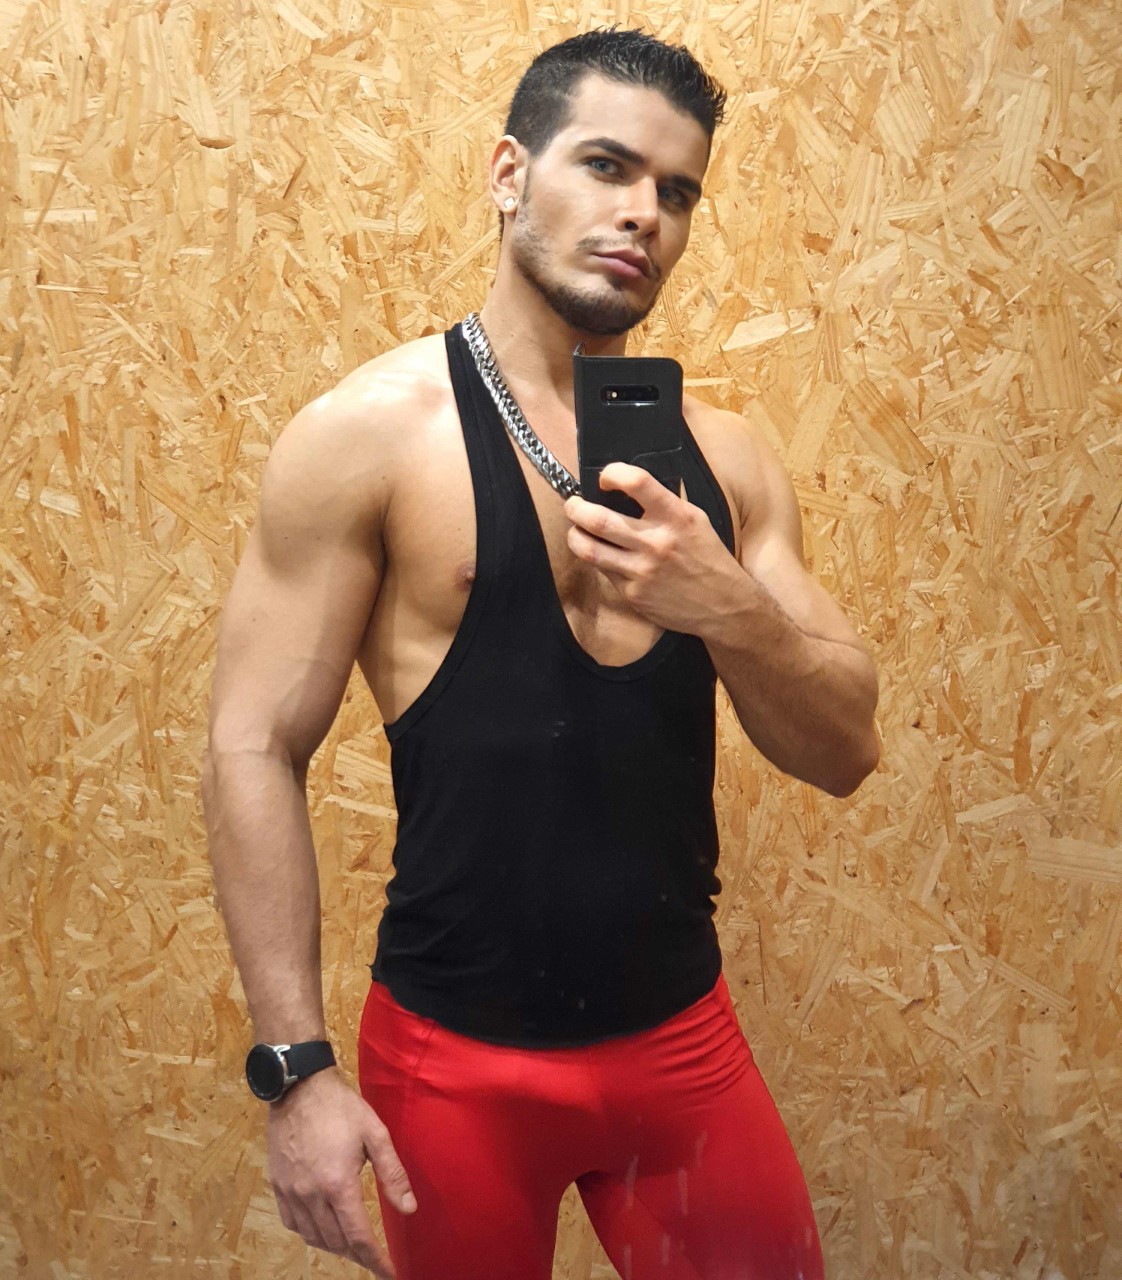 Ator gay Rico Marlon diz que é censurado no Instagram por homofobia